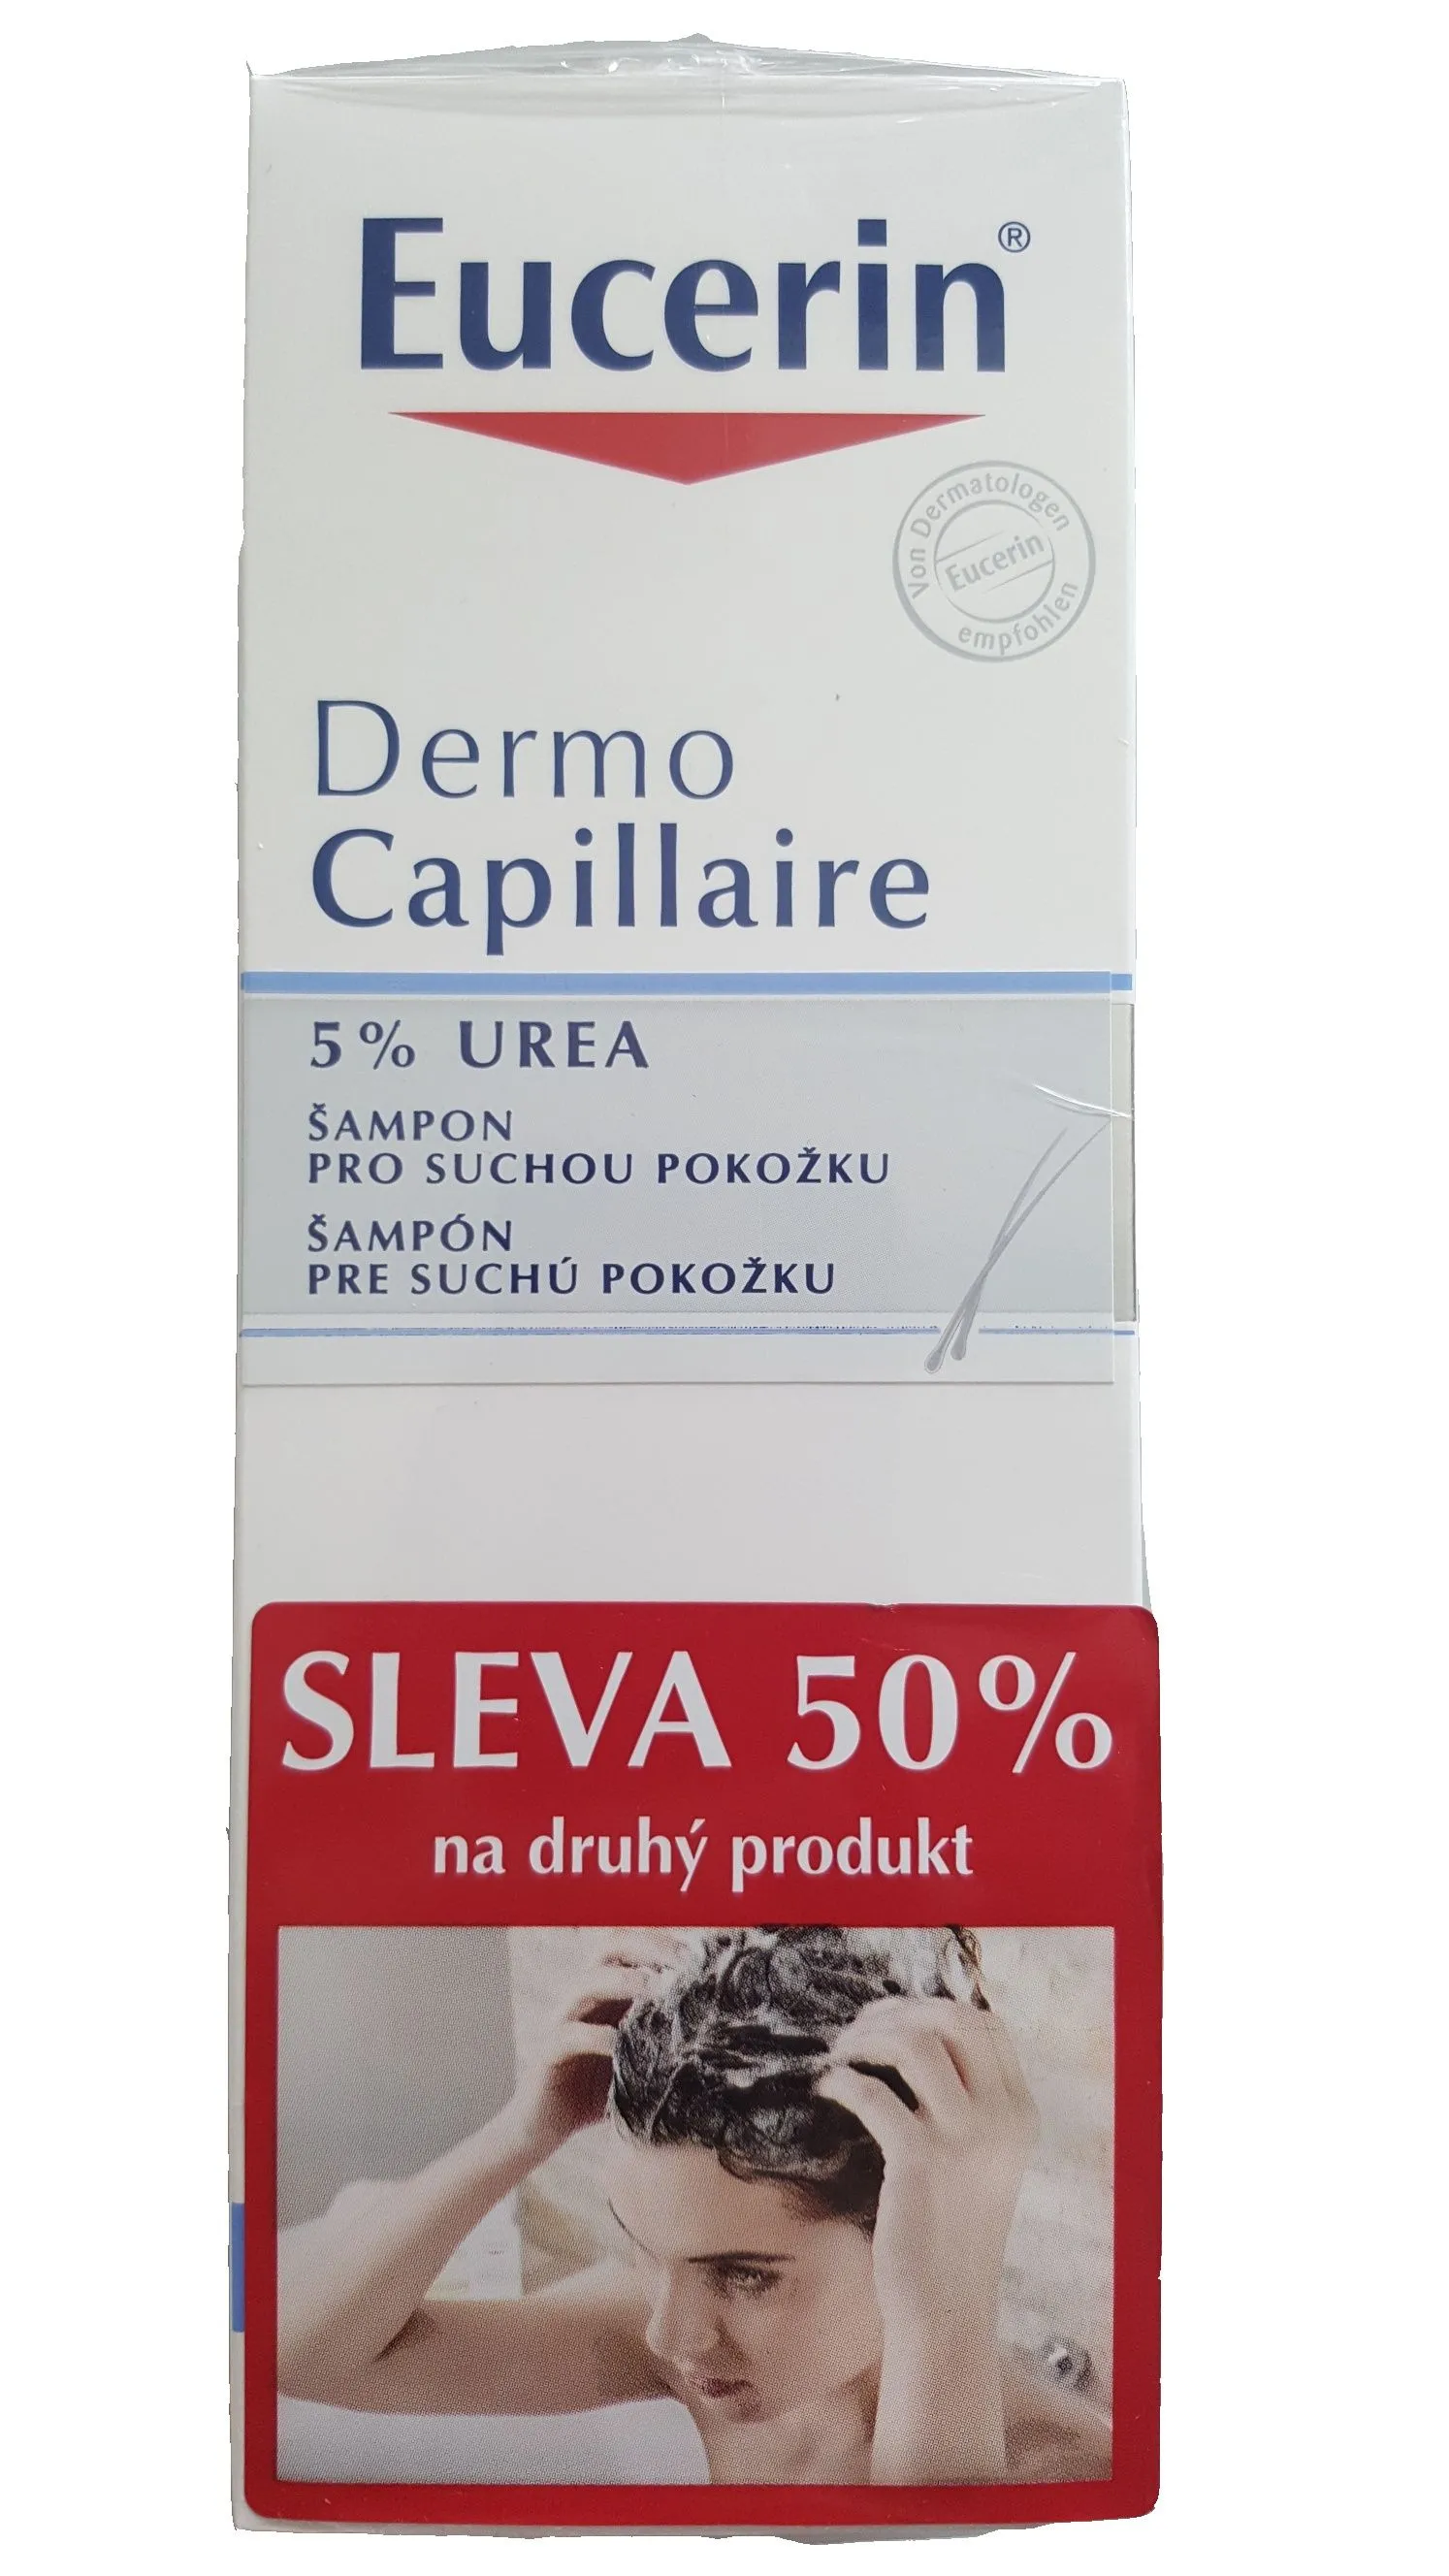 EUCERIN DermoCapillaire šampon UREA 5% promo 2017